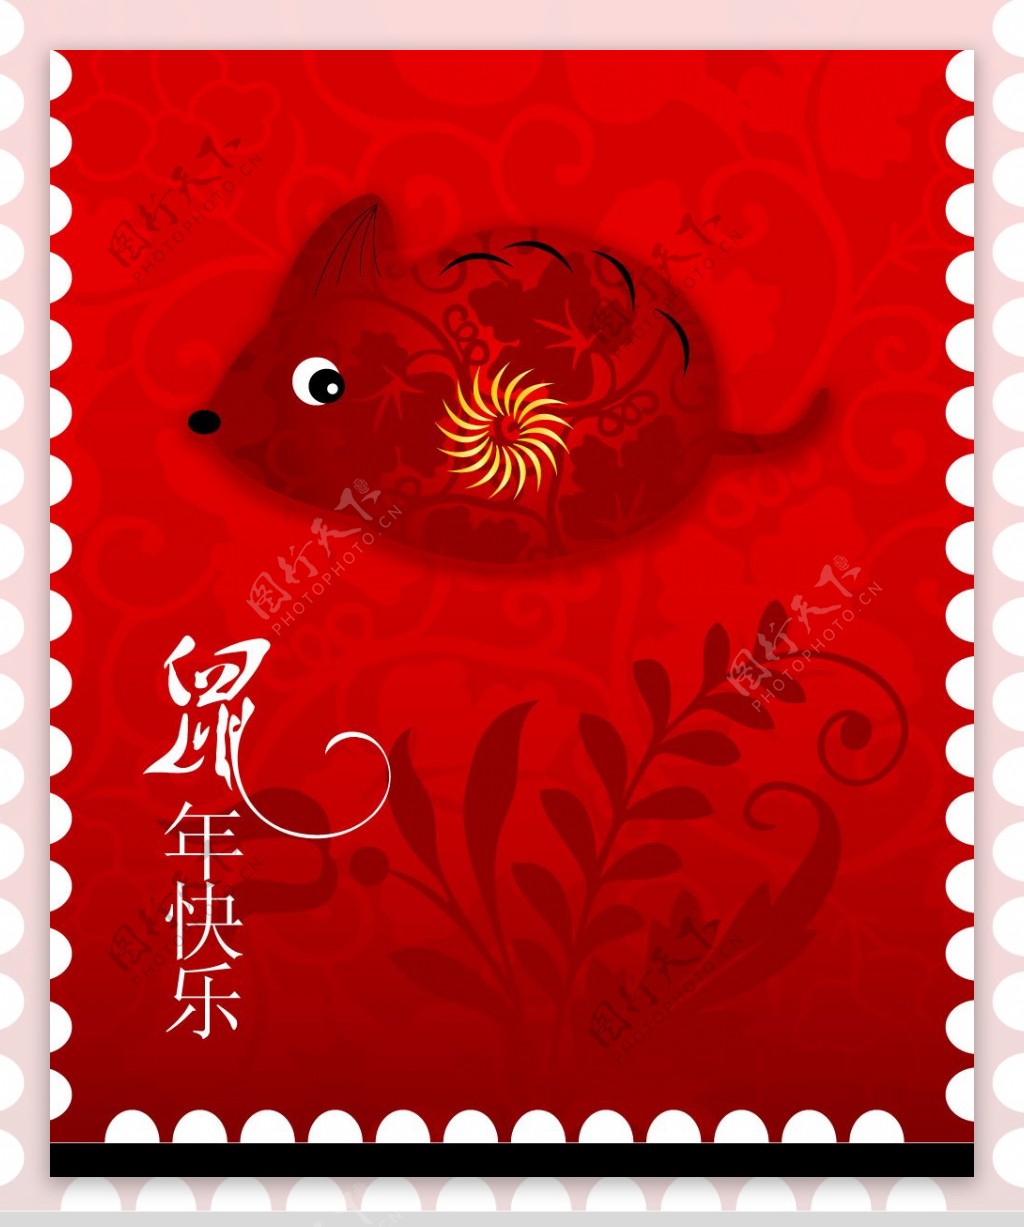 鼠年邮票图片